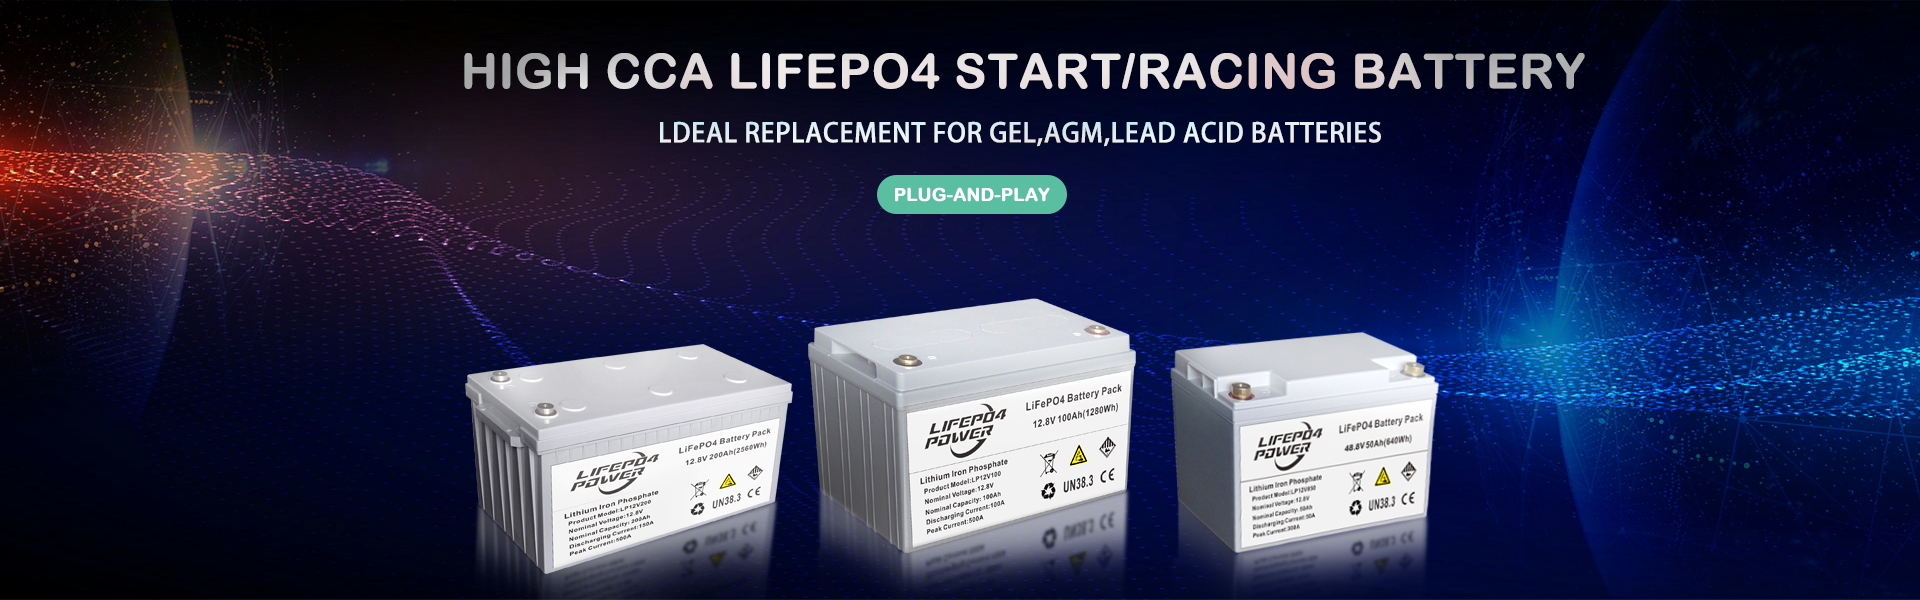 پلاگین و بازی باتری Start / Racing High CCA LiFePO4. جایگزینی ایده آل باتری های GEL ، AGM ، سرب اسید